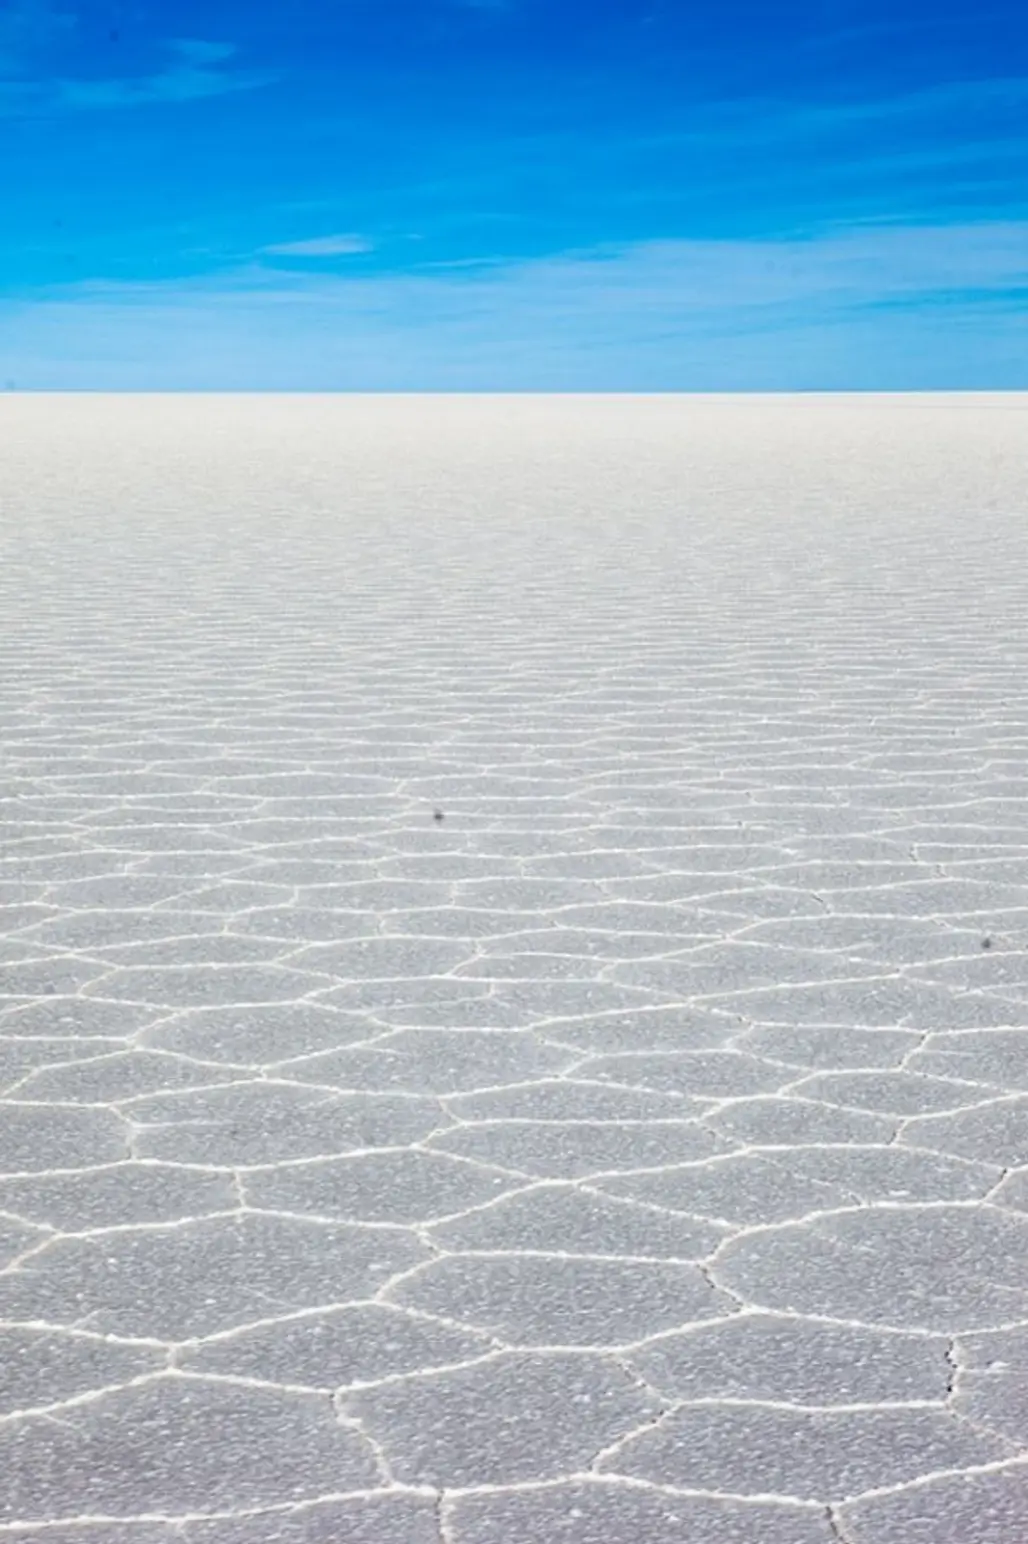 Bolivia’s Reflective Salt Flats